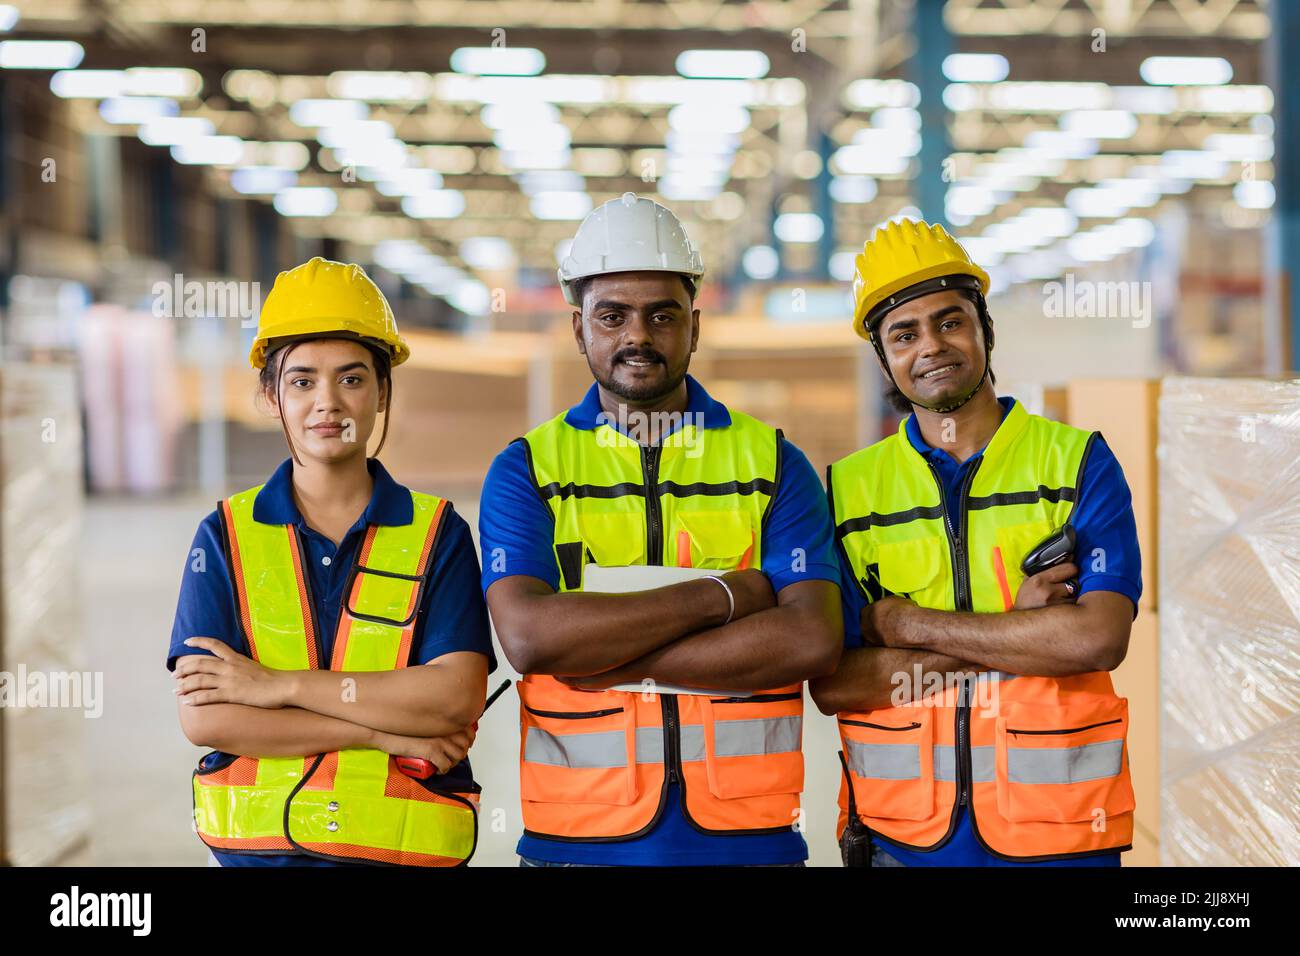 Groupe de personnes d'ingénieur travailleur indien hispanique latin confiant sourire debout dans un grand entrepôt d'usine Banque D'Images